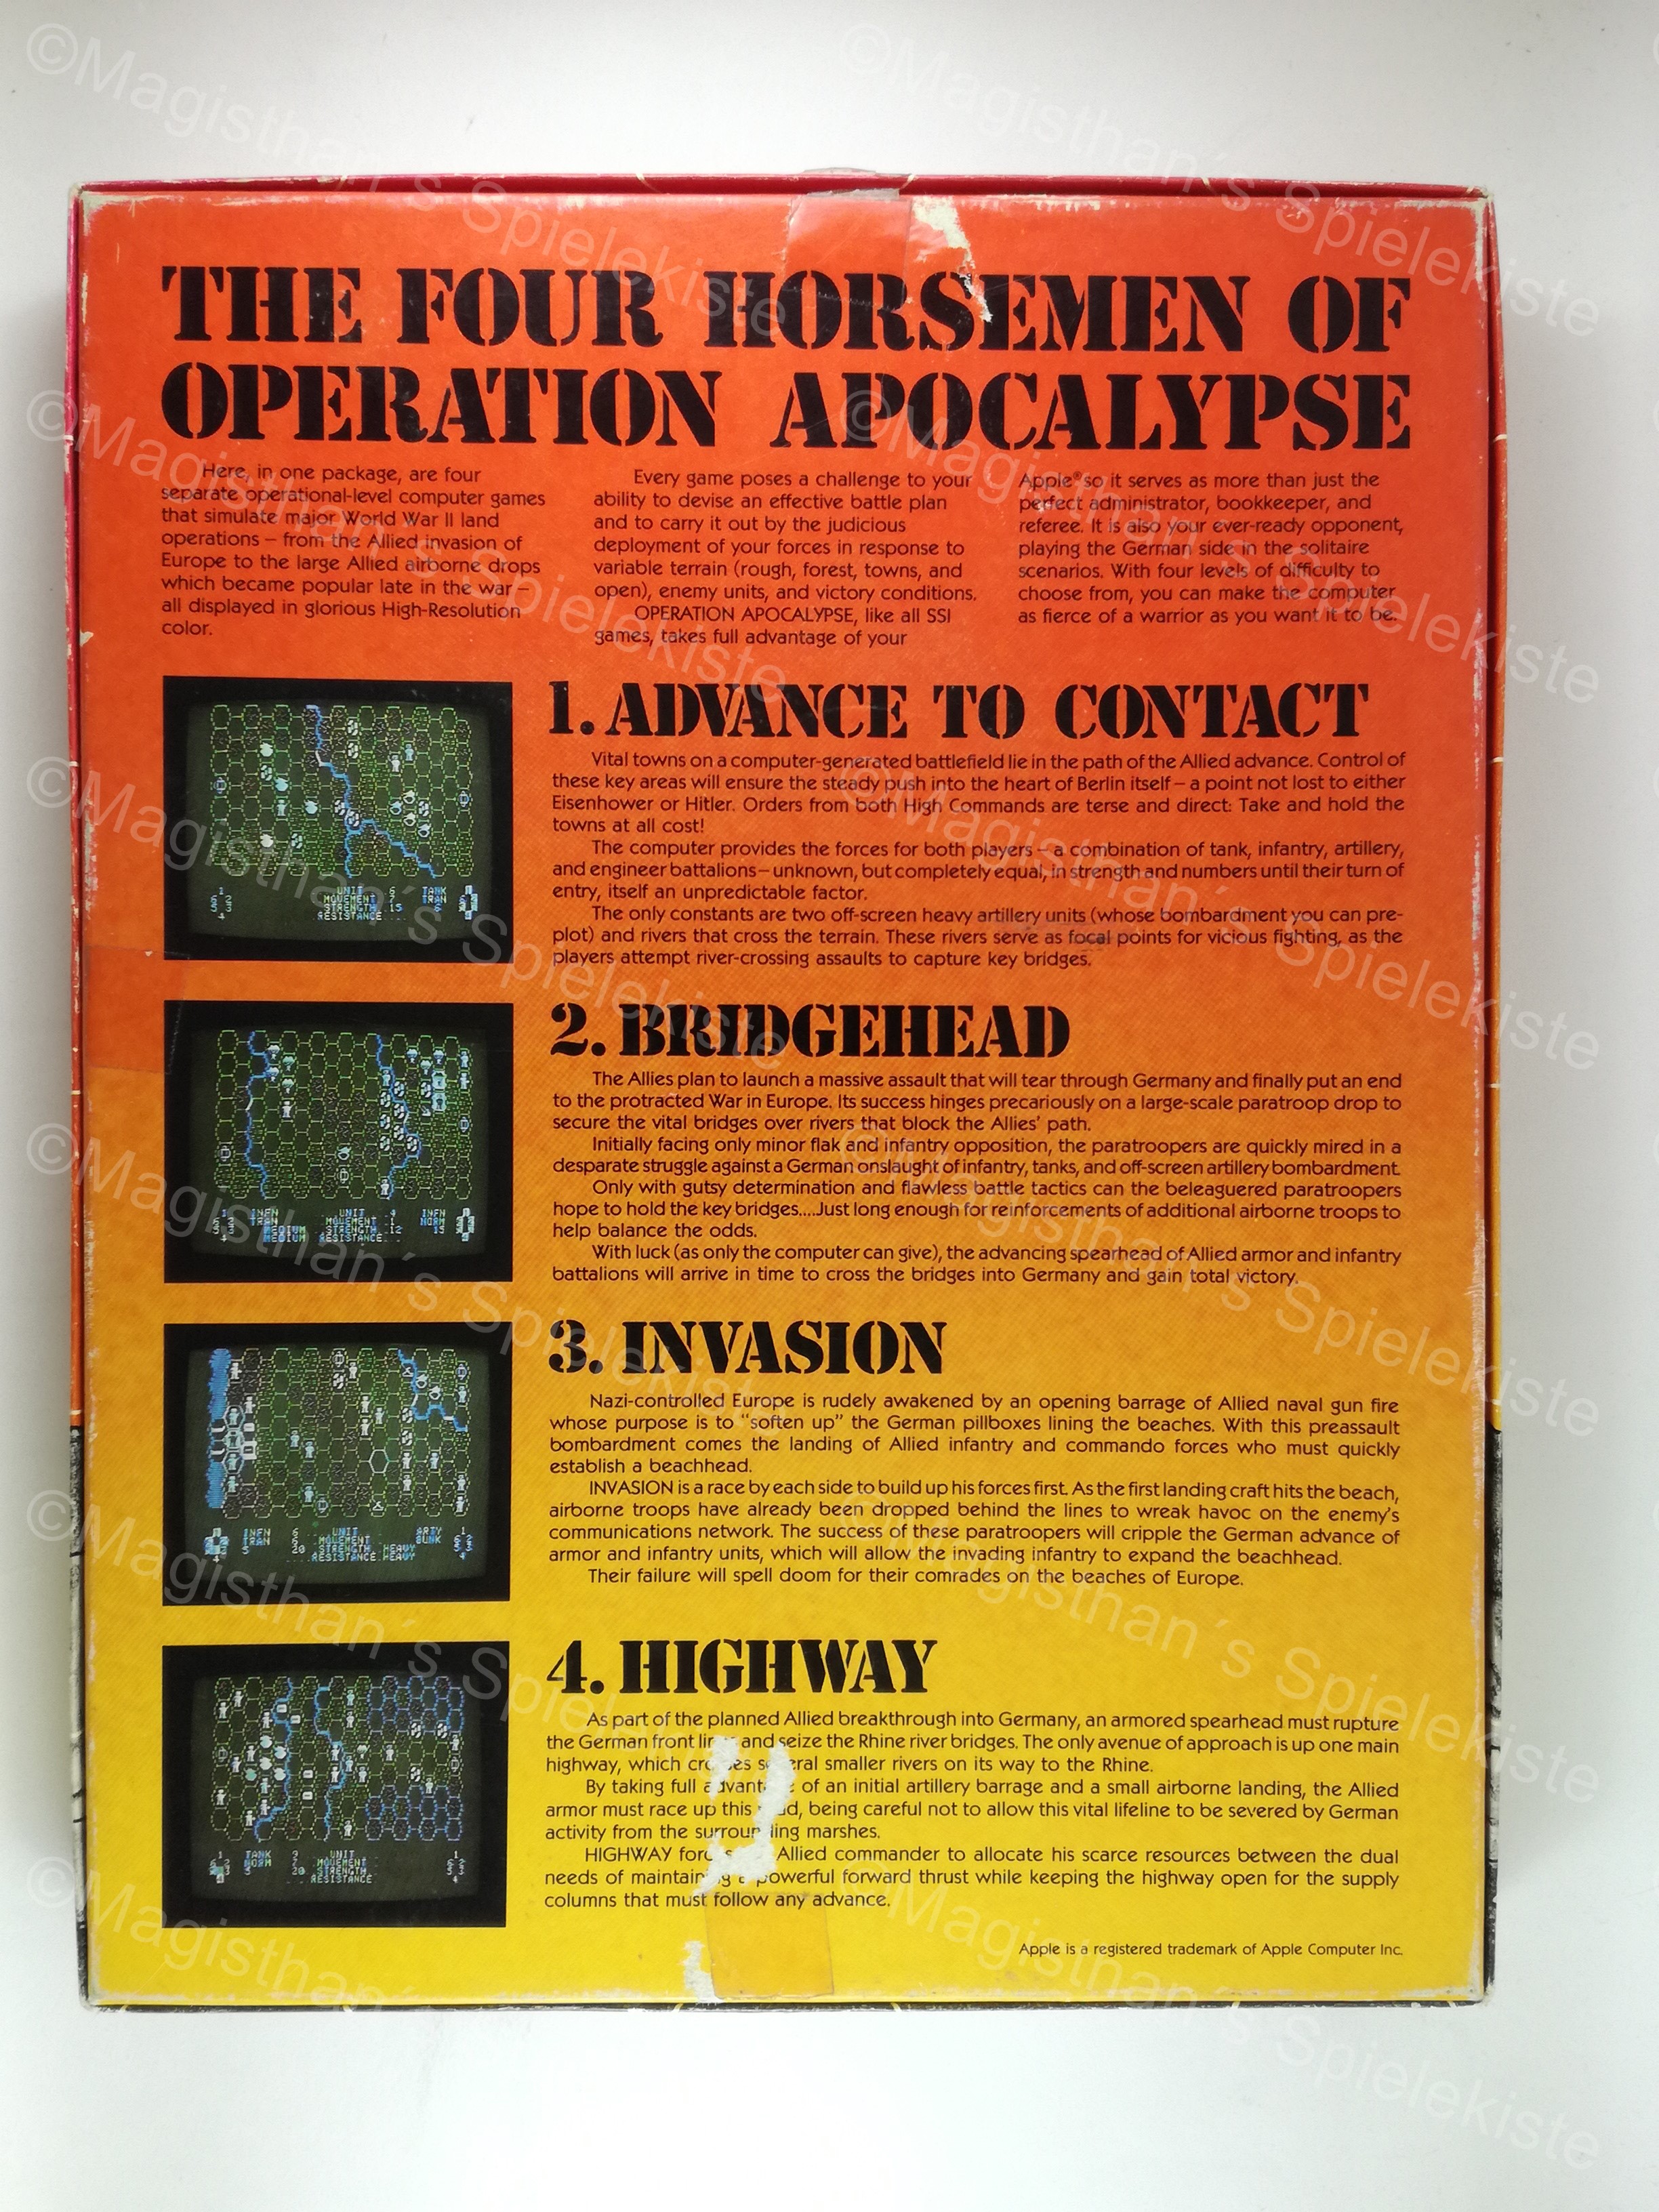 OperationApocalypse_1_back.jpg